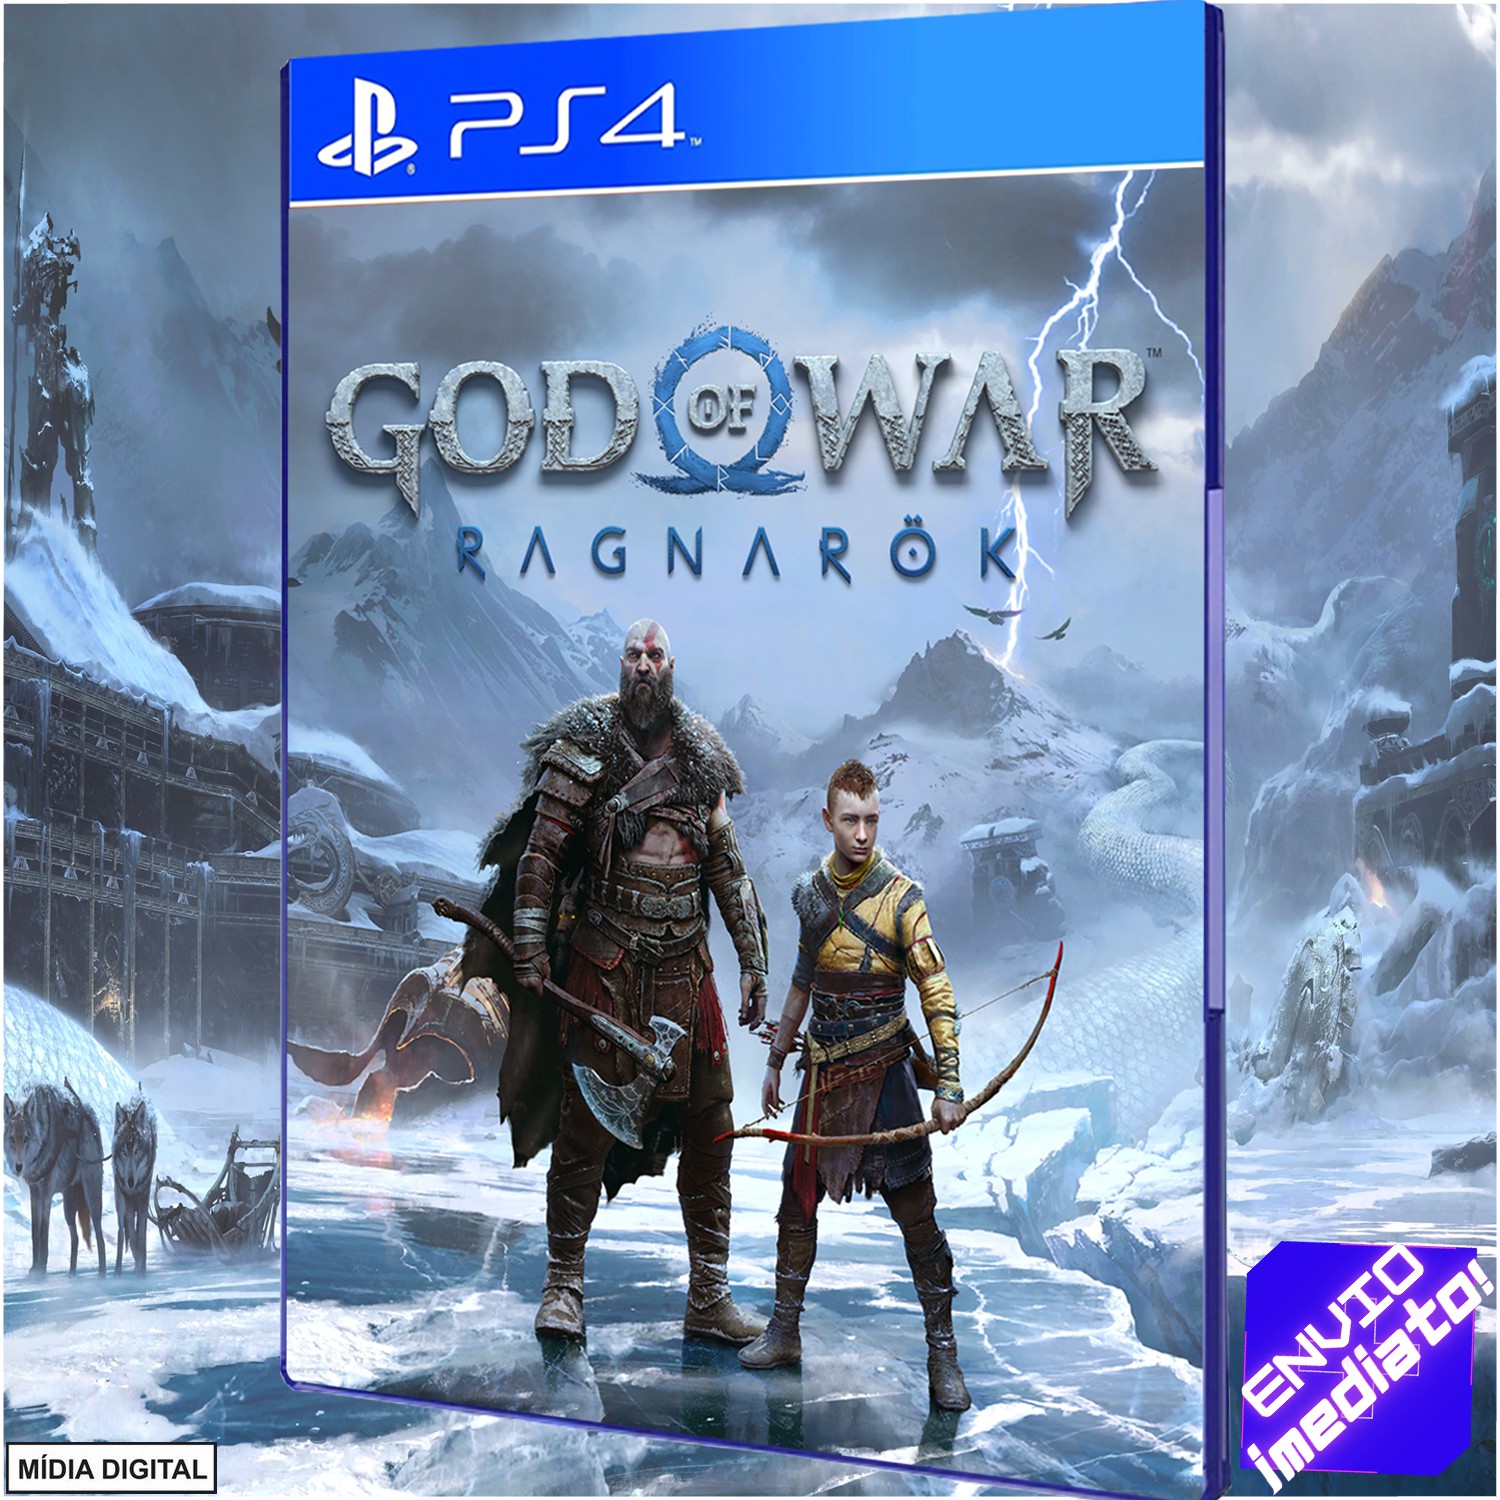 Novo 'God of War' é adiado; jogo também chega ao PS4 - Olhar Digital